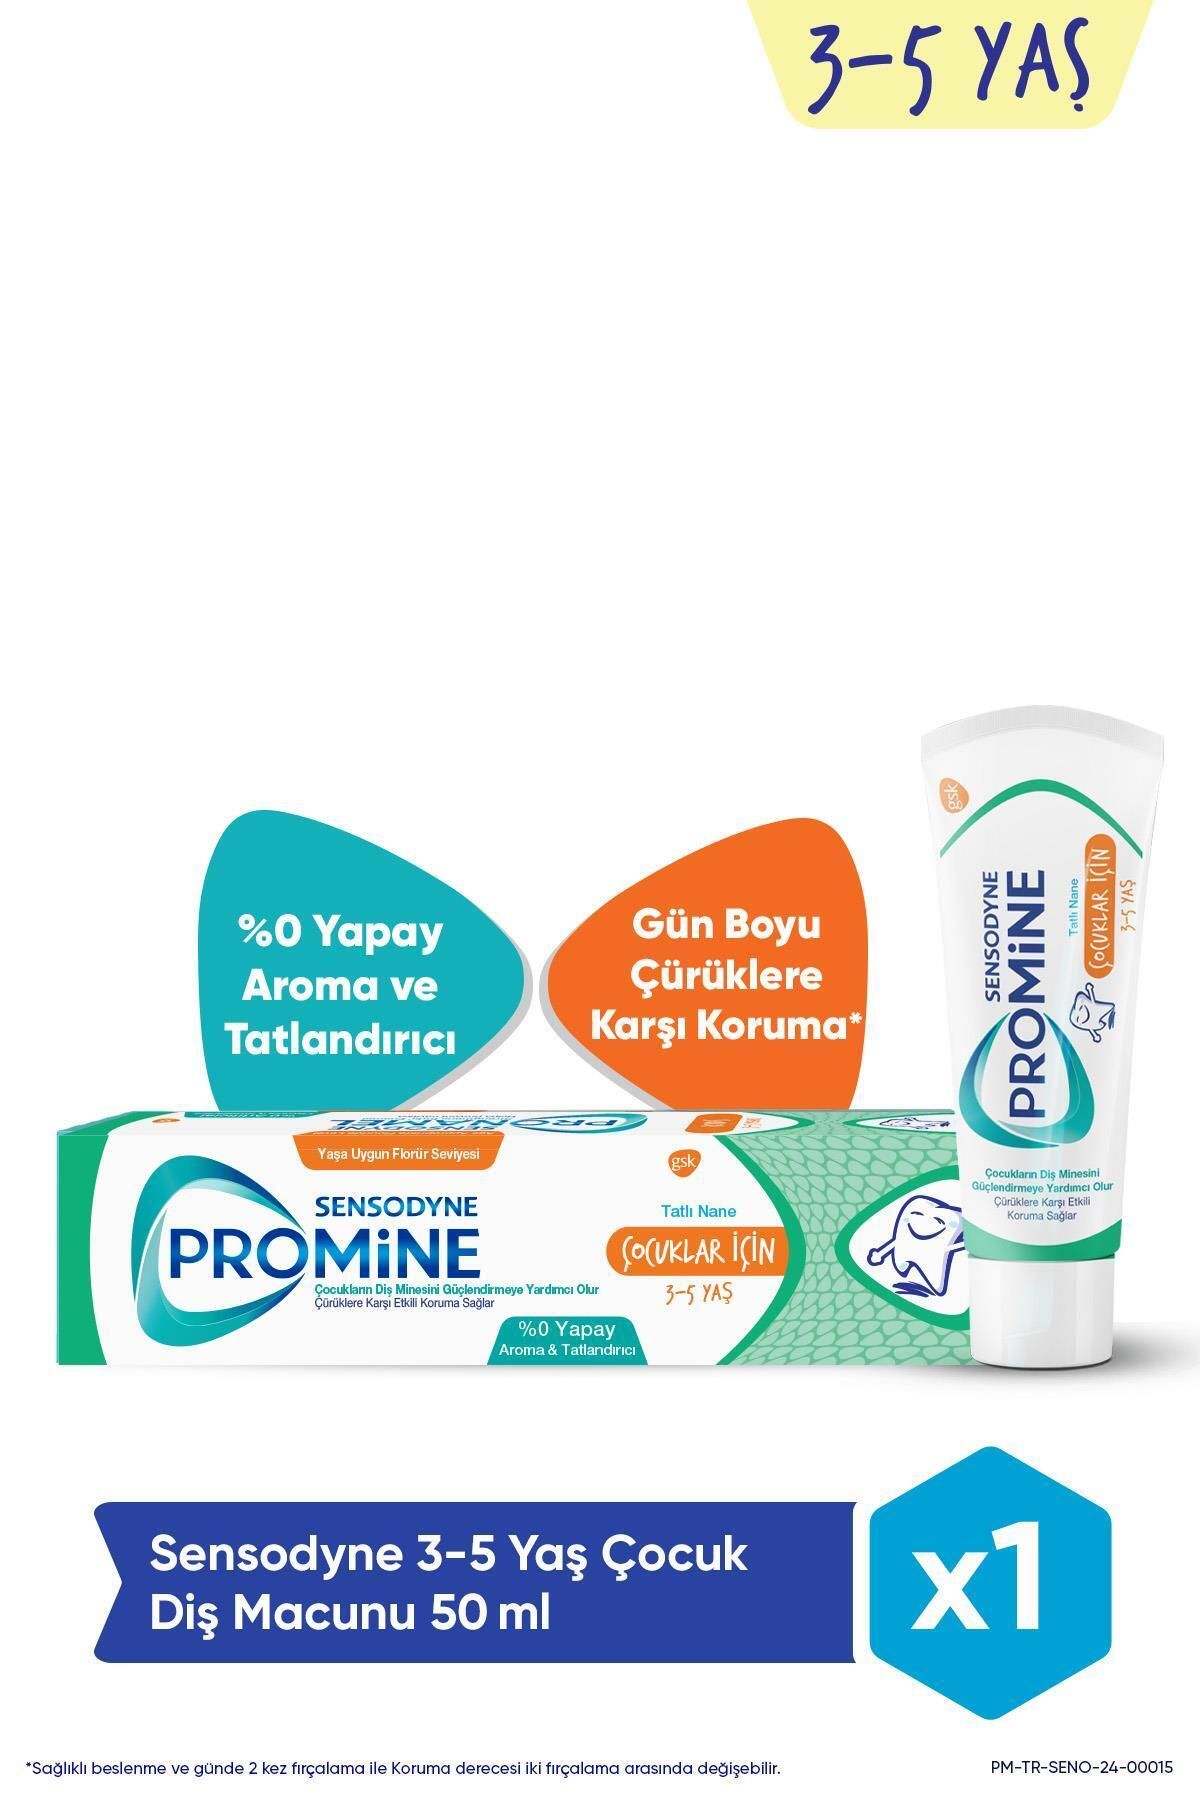 Sensodyne Promine 3-5 Yaş Çocuklar İçin Gün Boyu Çürüklere Karşı Koruyan Şekersiz Diş Macunu 50ml